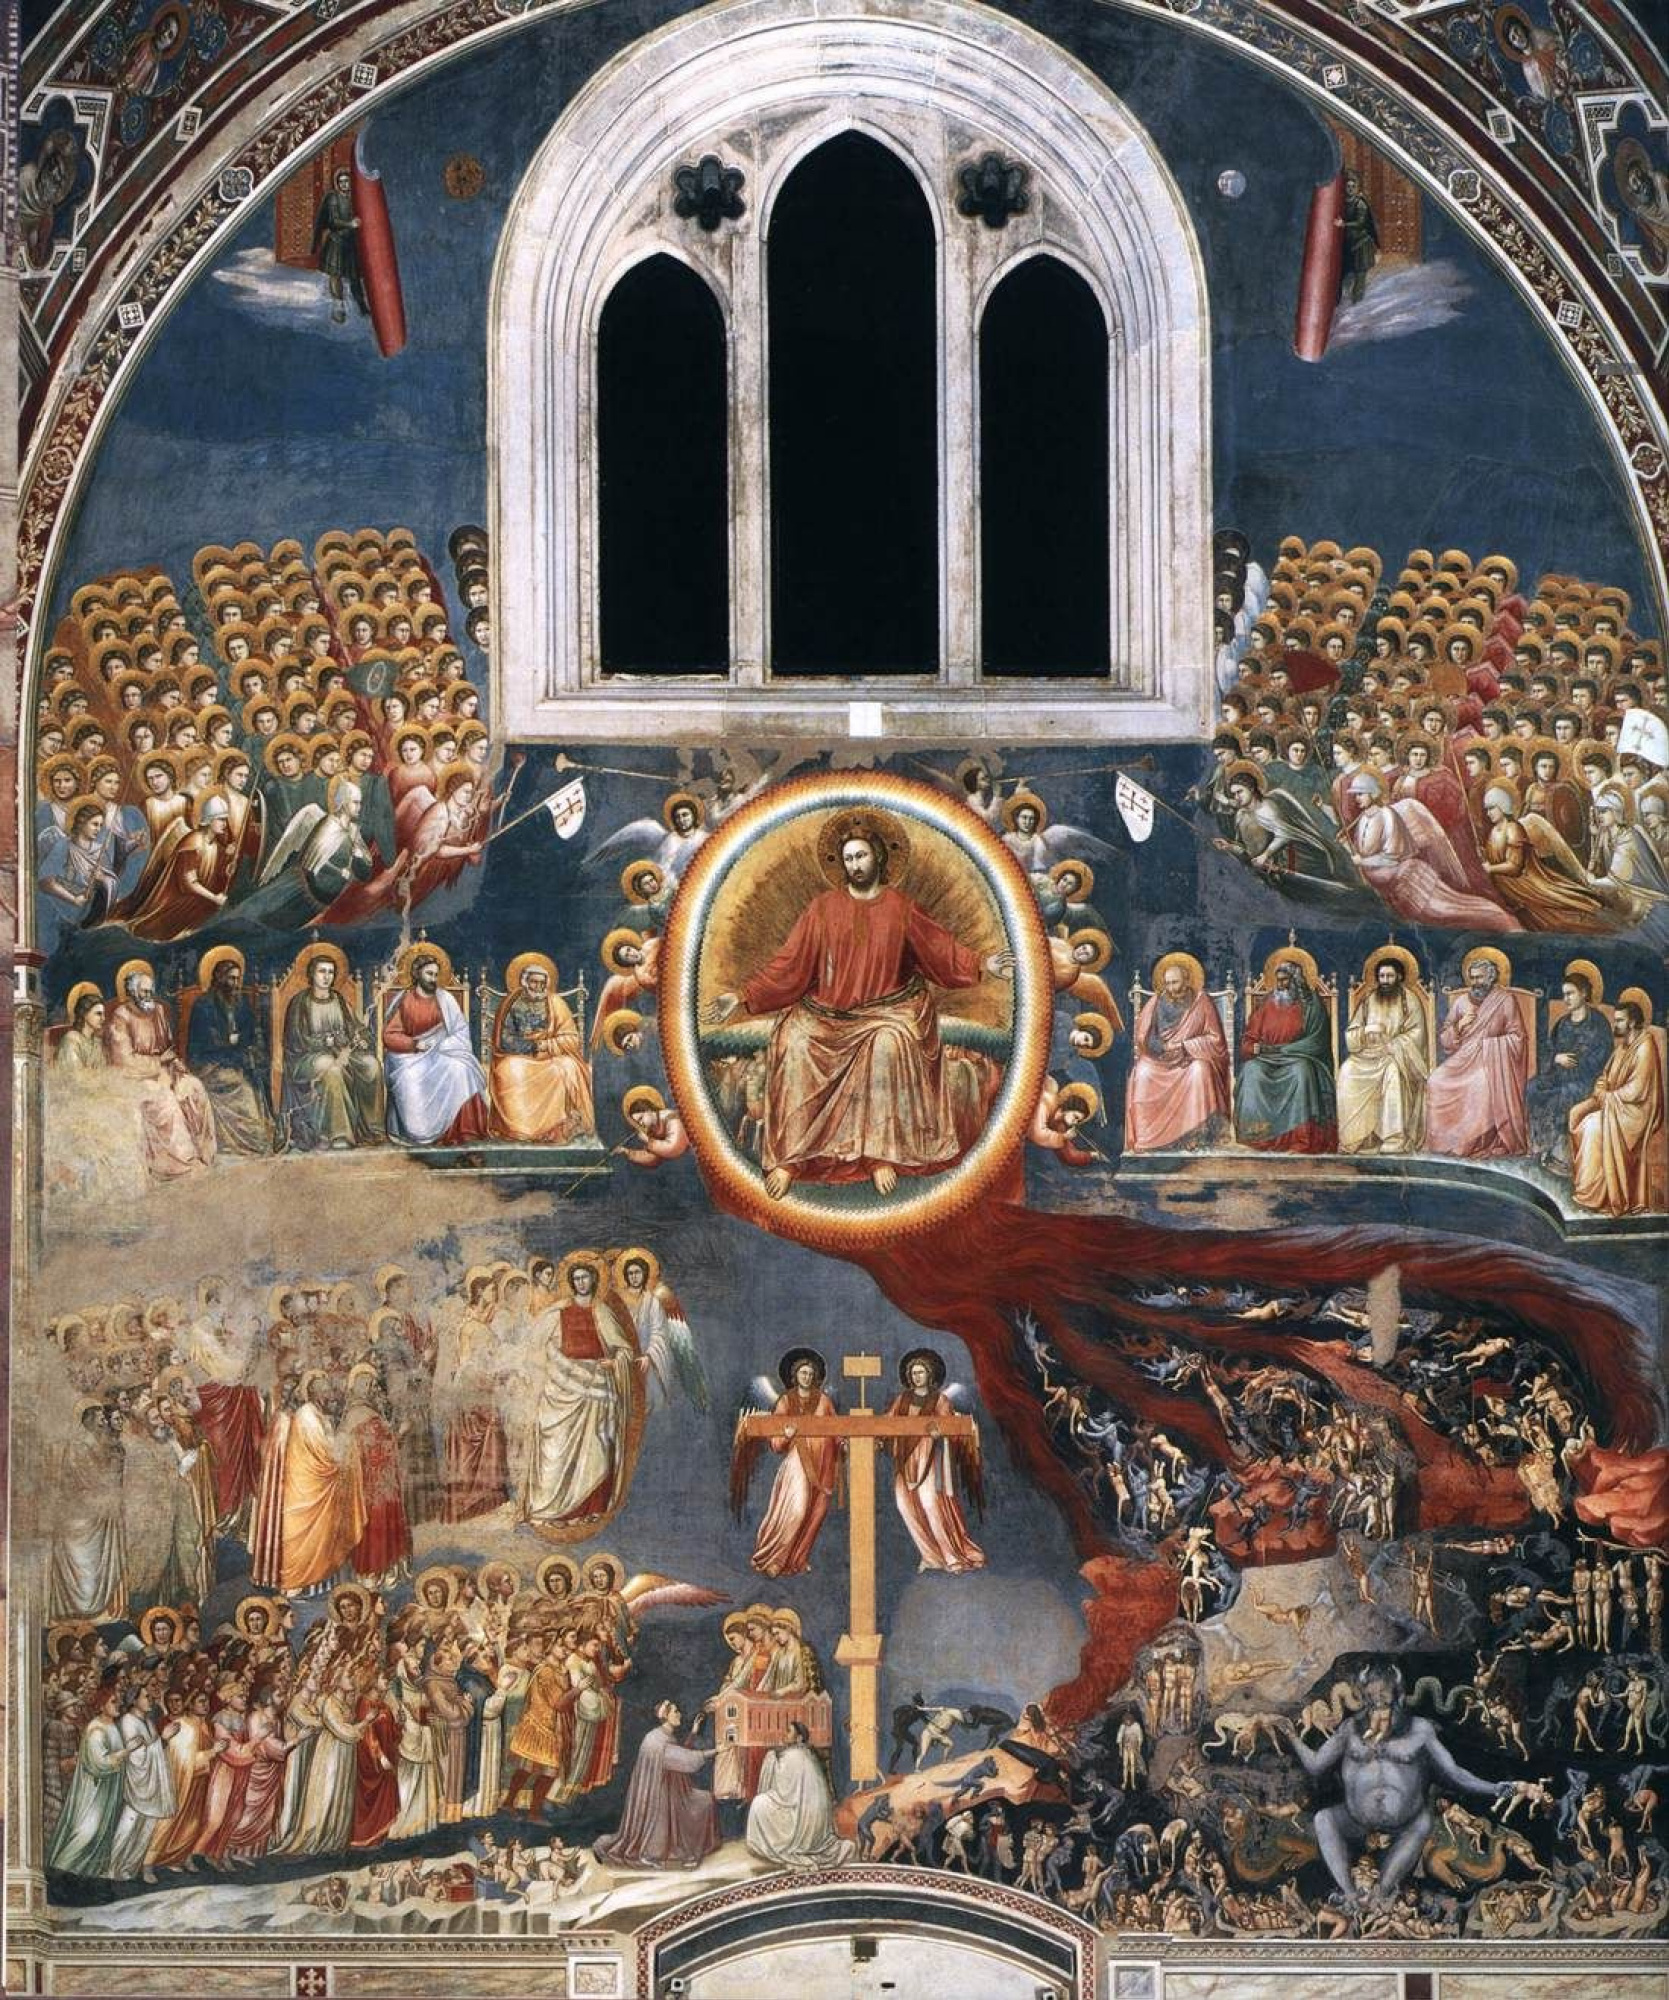 Giotto di Bondone, The Last Judgment in the Scrovegni Chapel, c. 1307